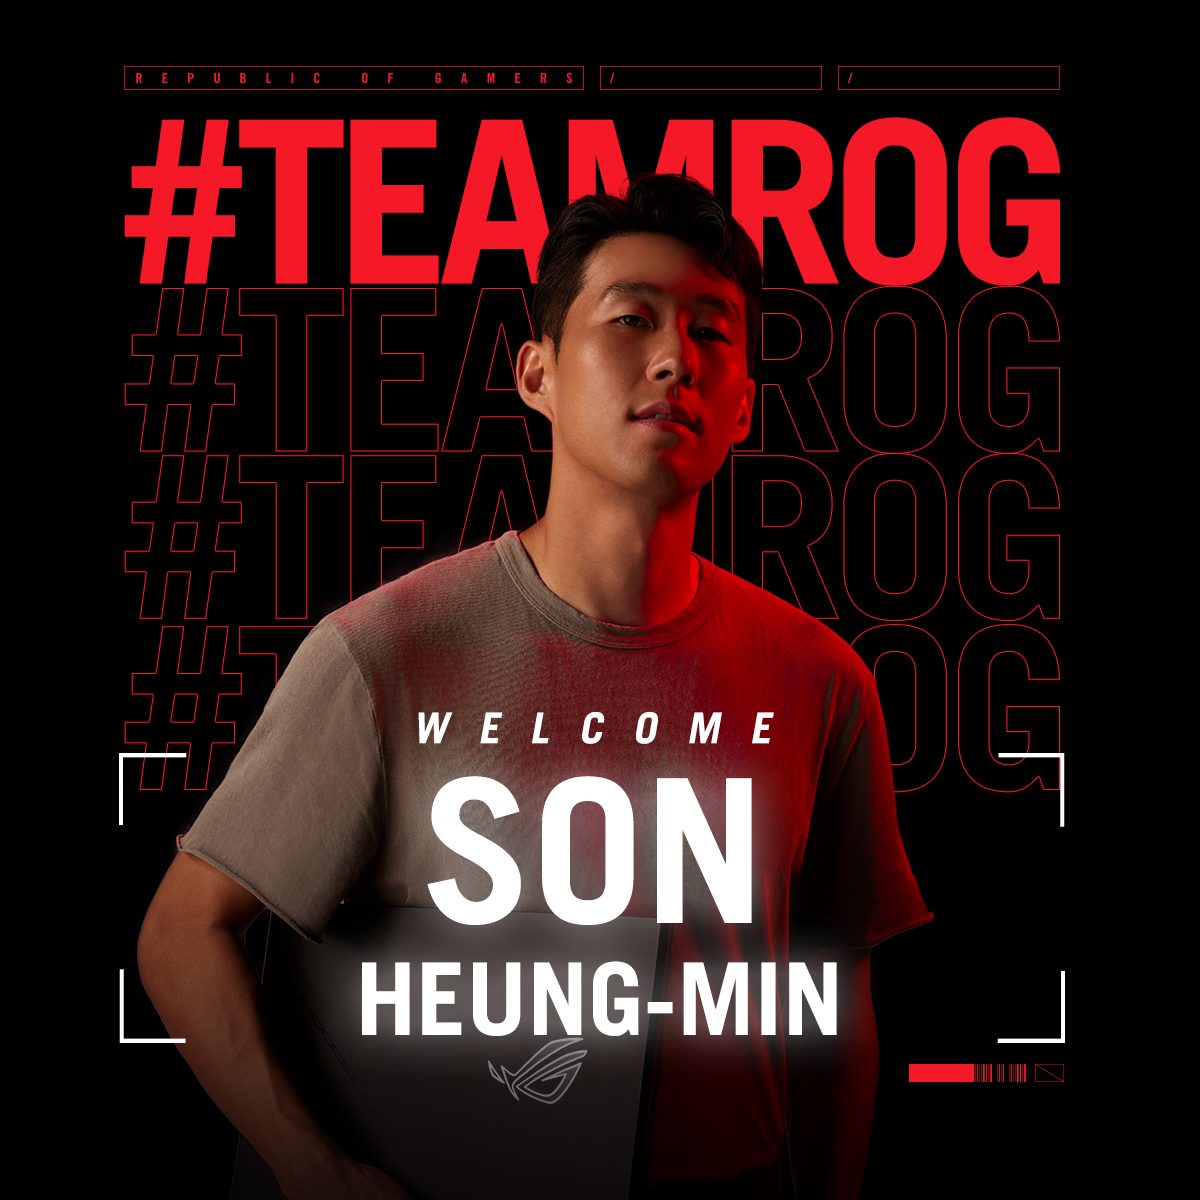 Son Heung-min trở thành đối tác thương hiệu chính thức của Team ROG